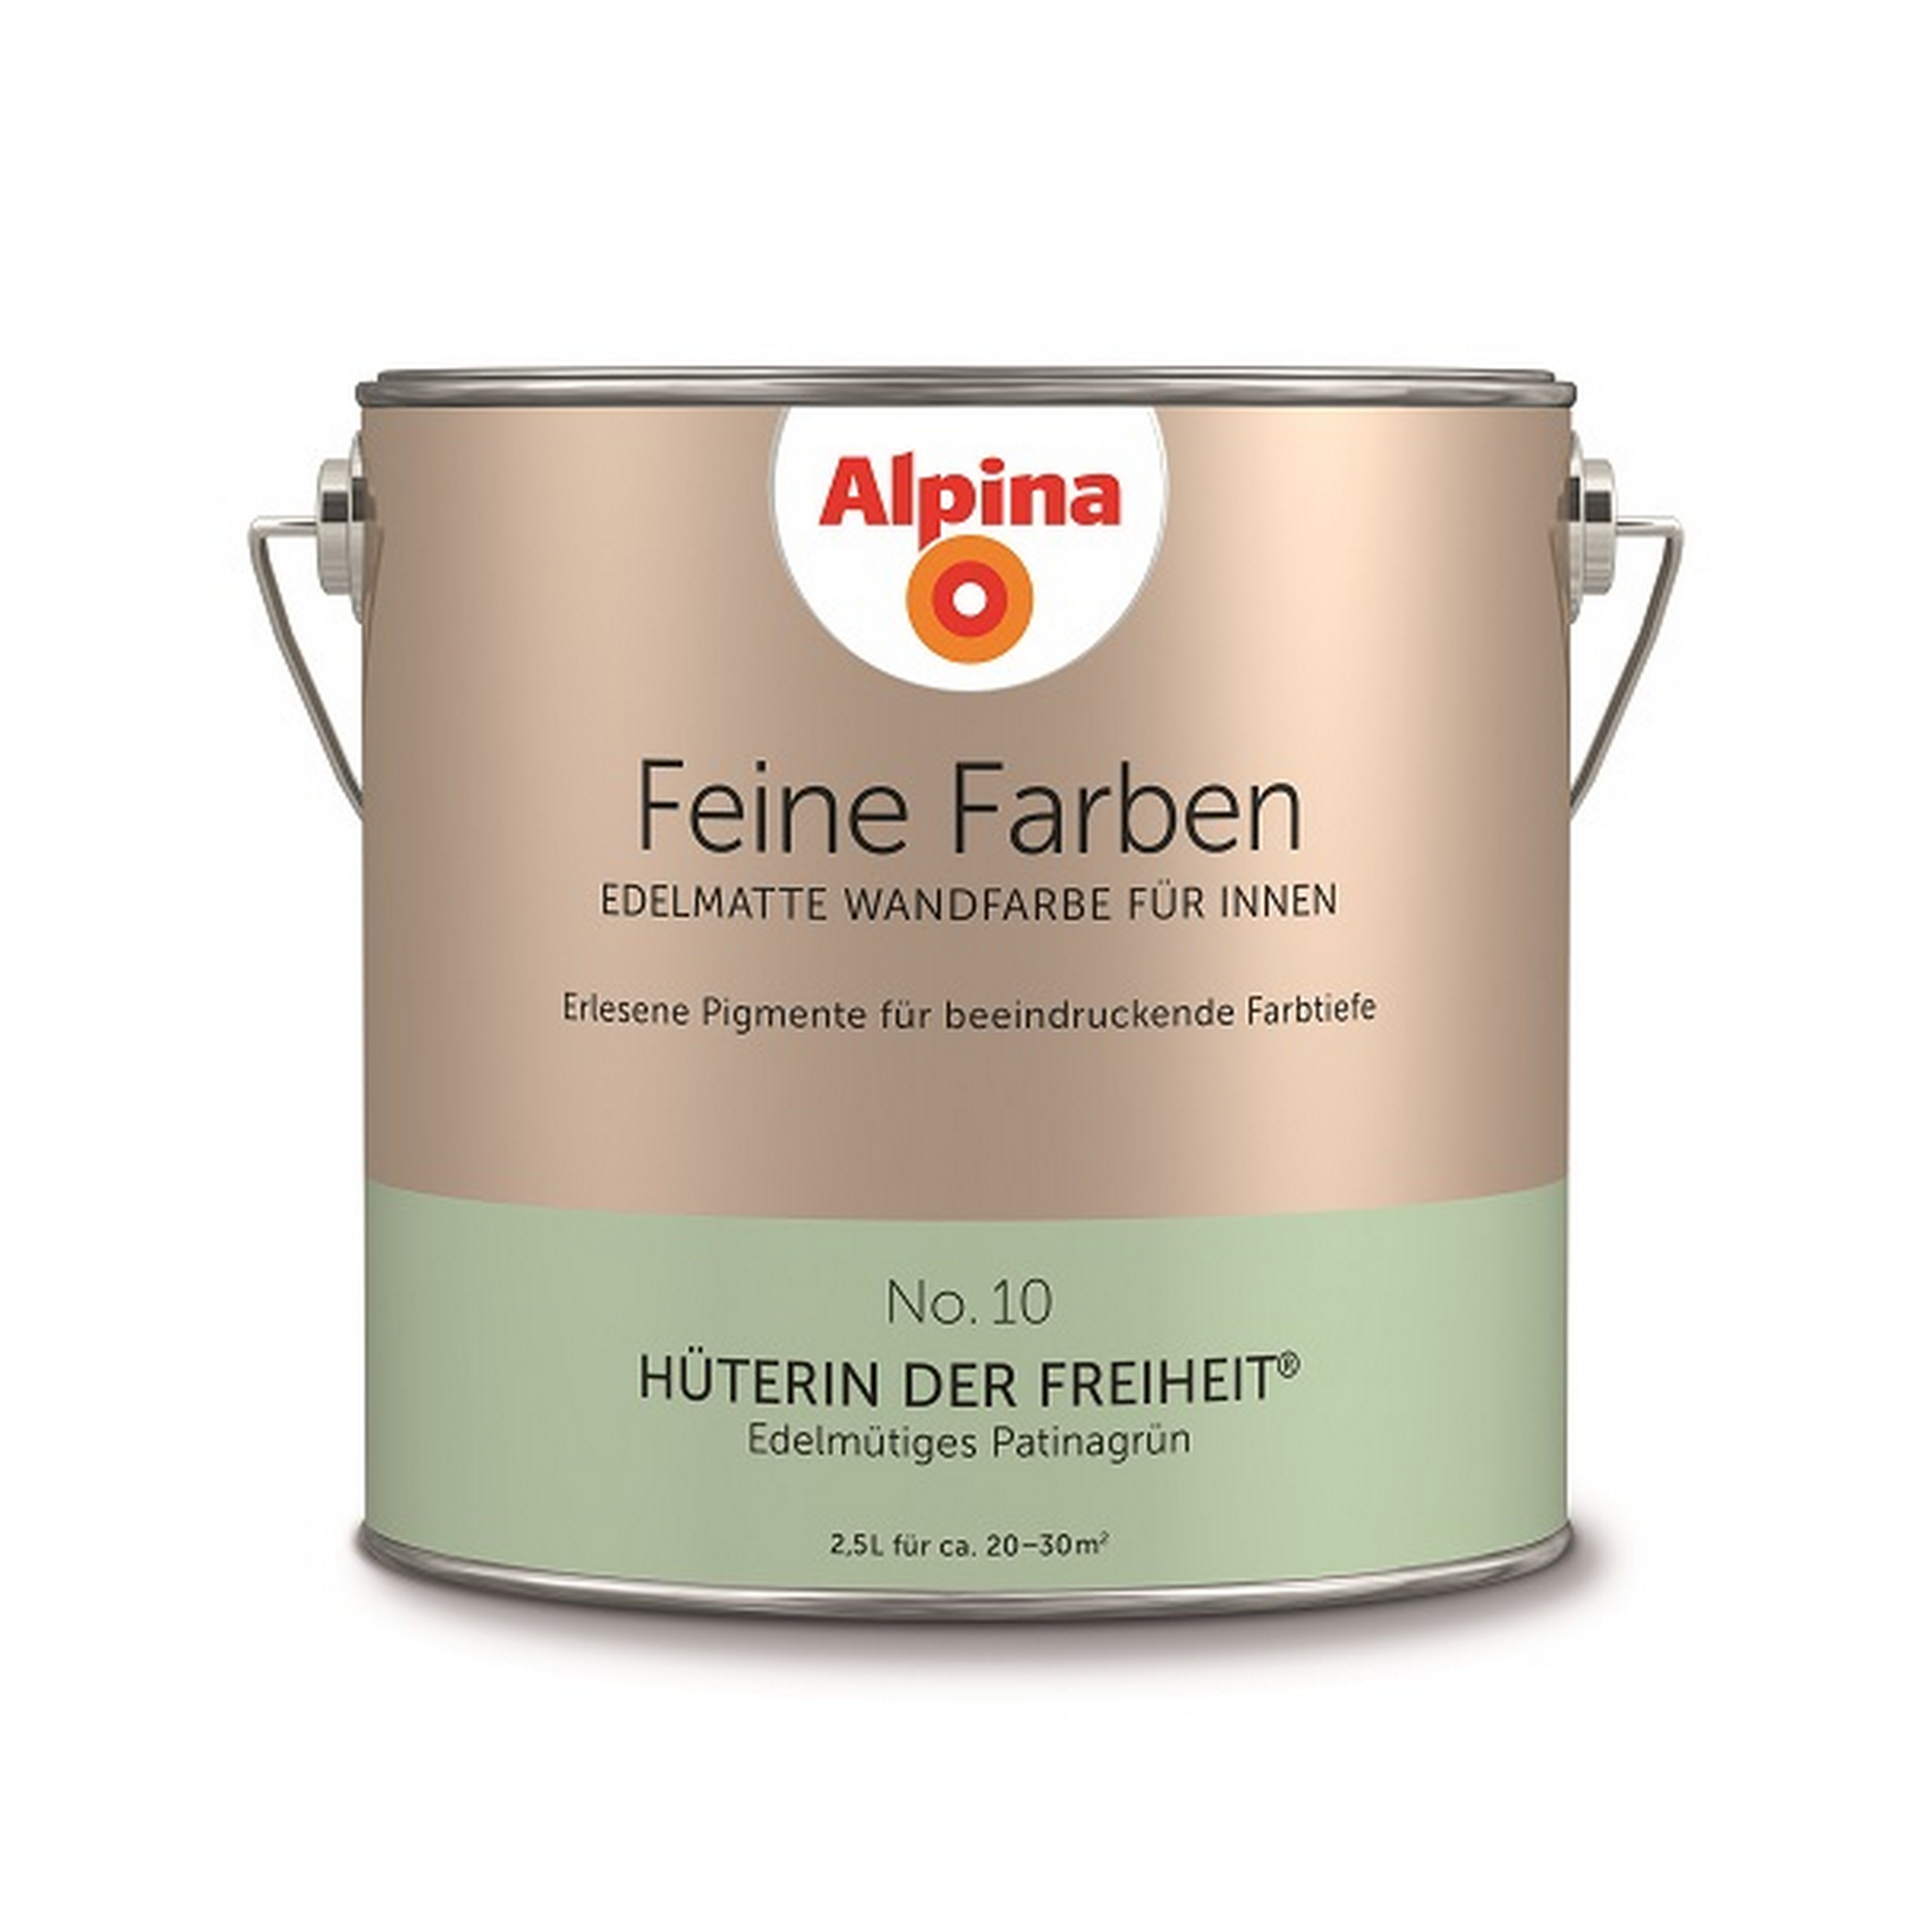 Feine Farben 'Hüterin der Freiheit' patinagrün matt 2,5 l + product picture